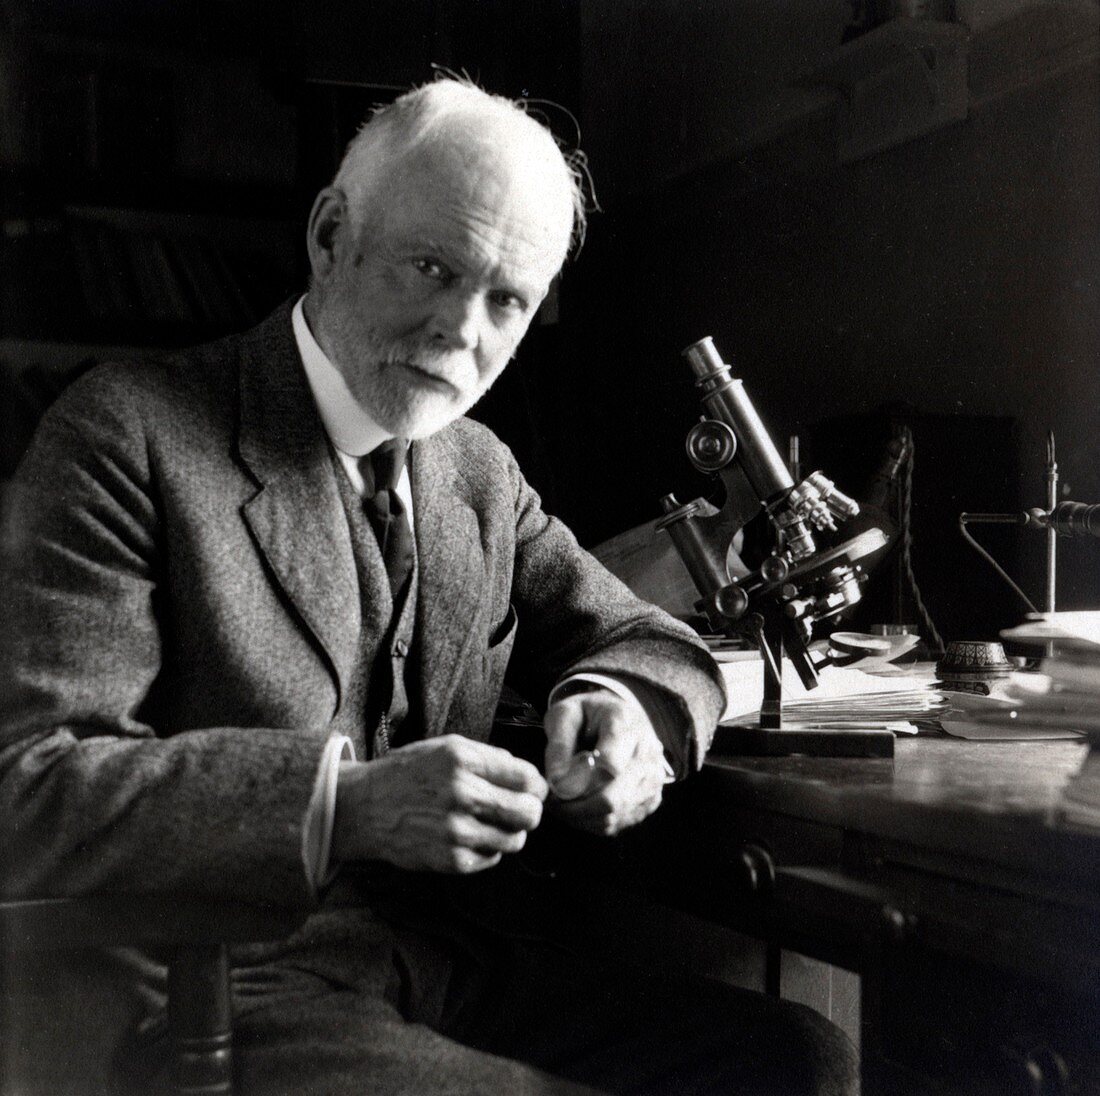 Edmund Wilson,US cell biologist